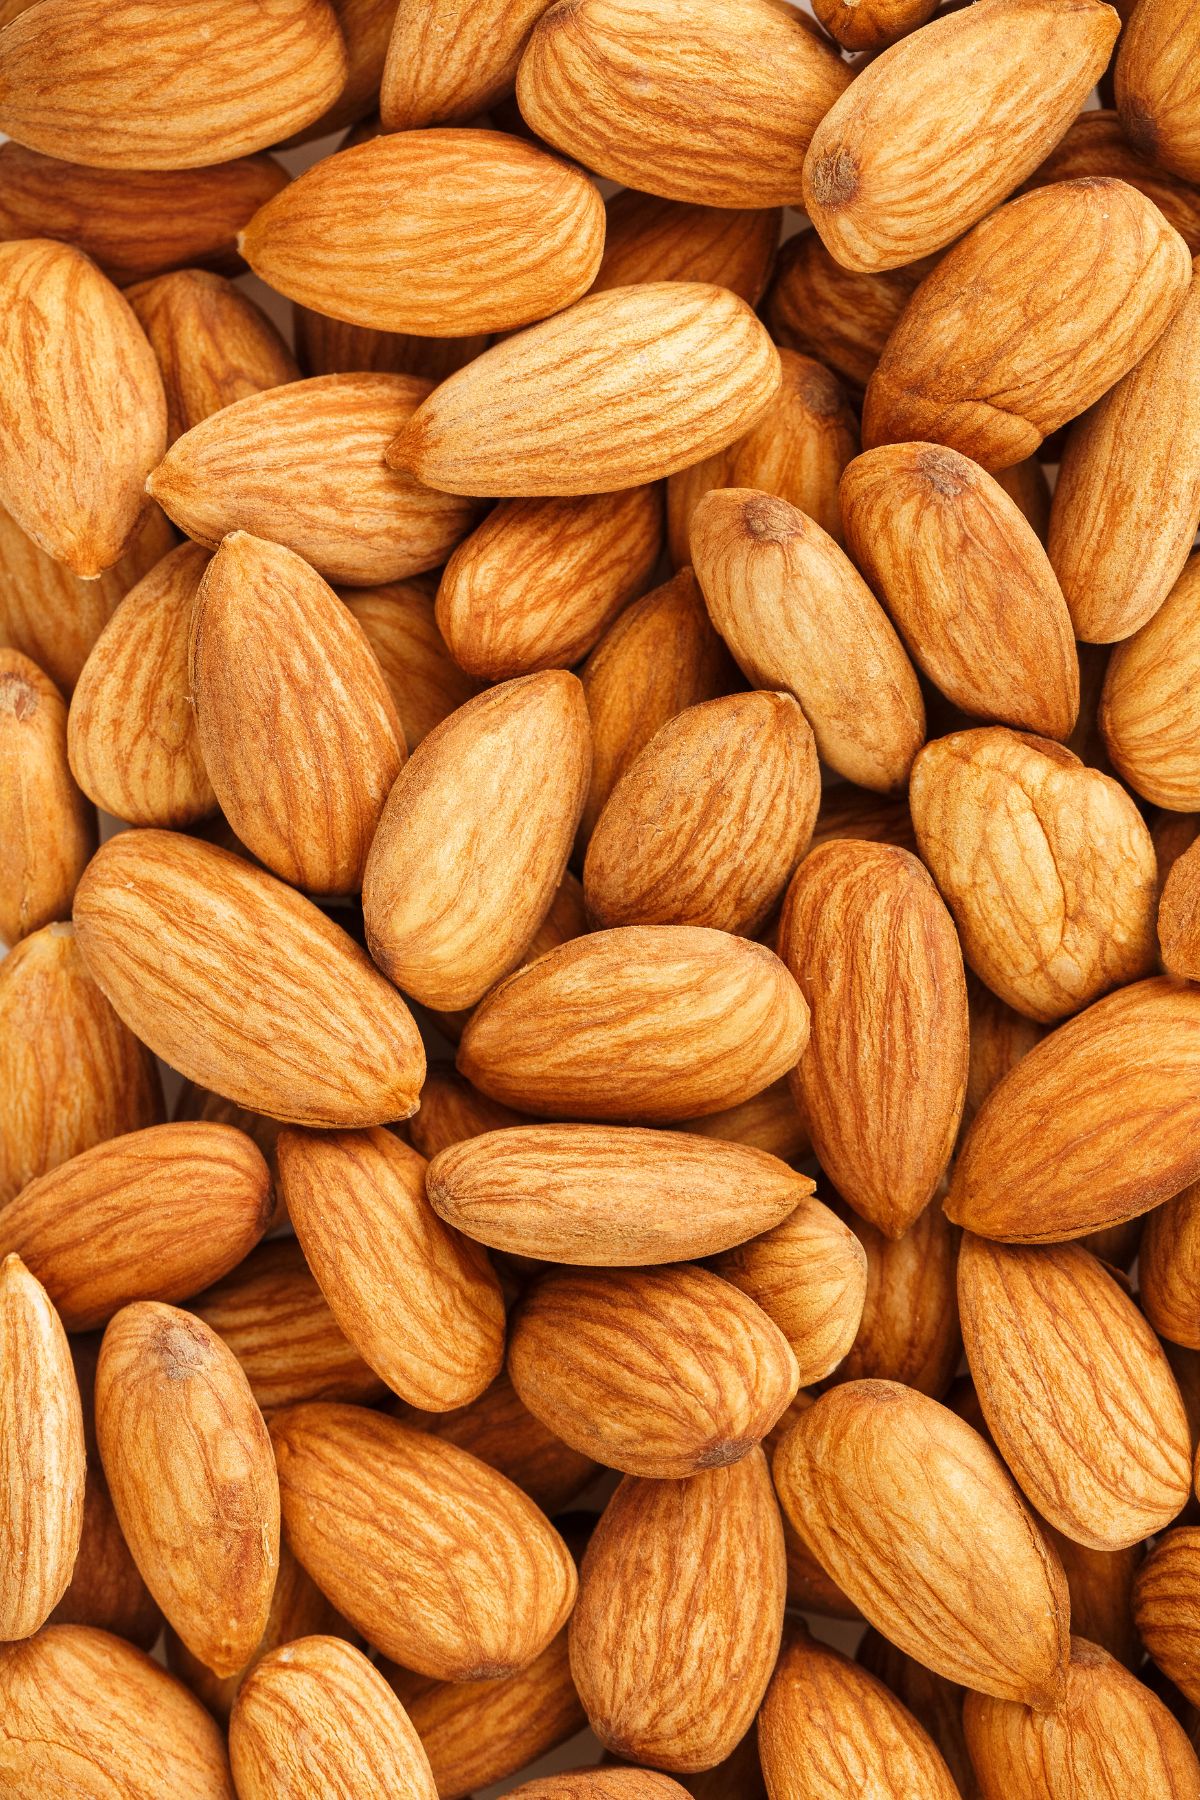 are almonds keto friendly